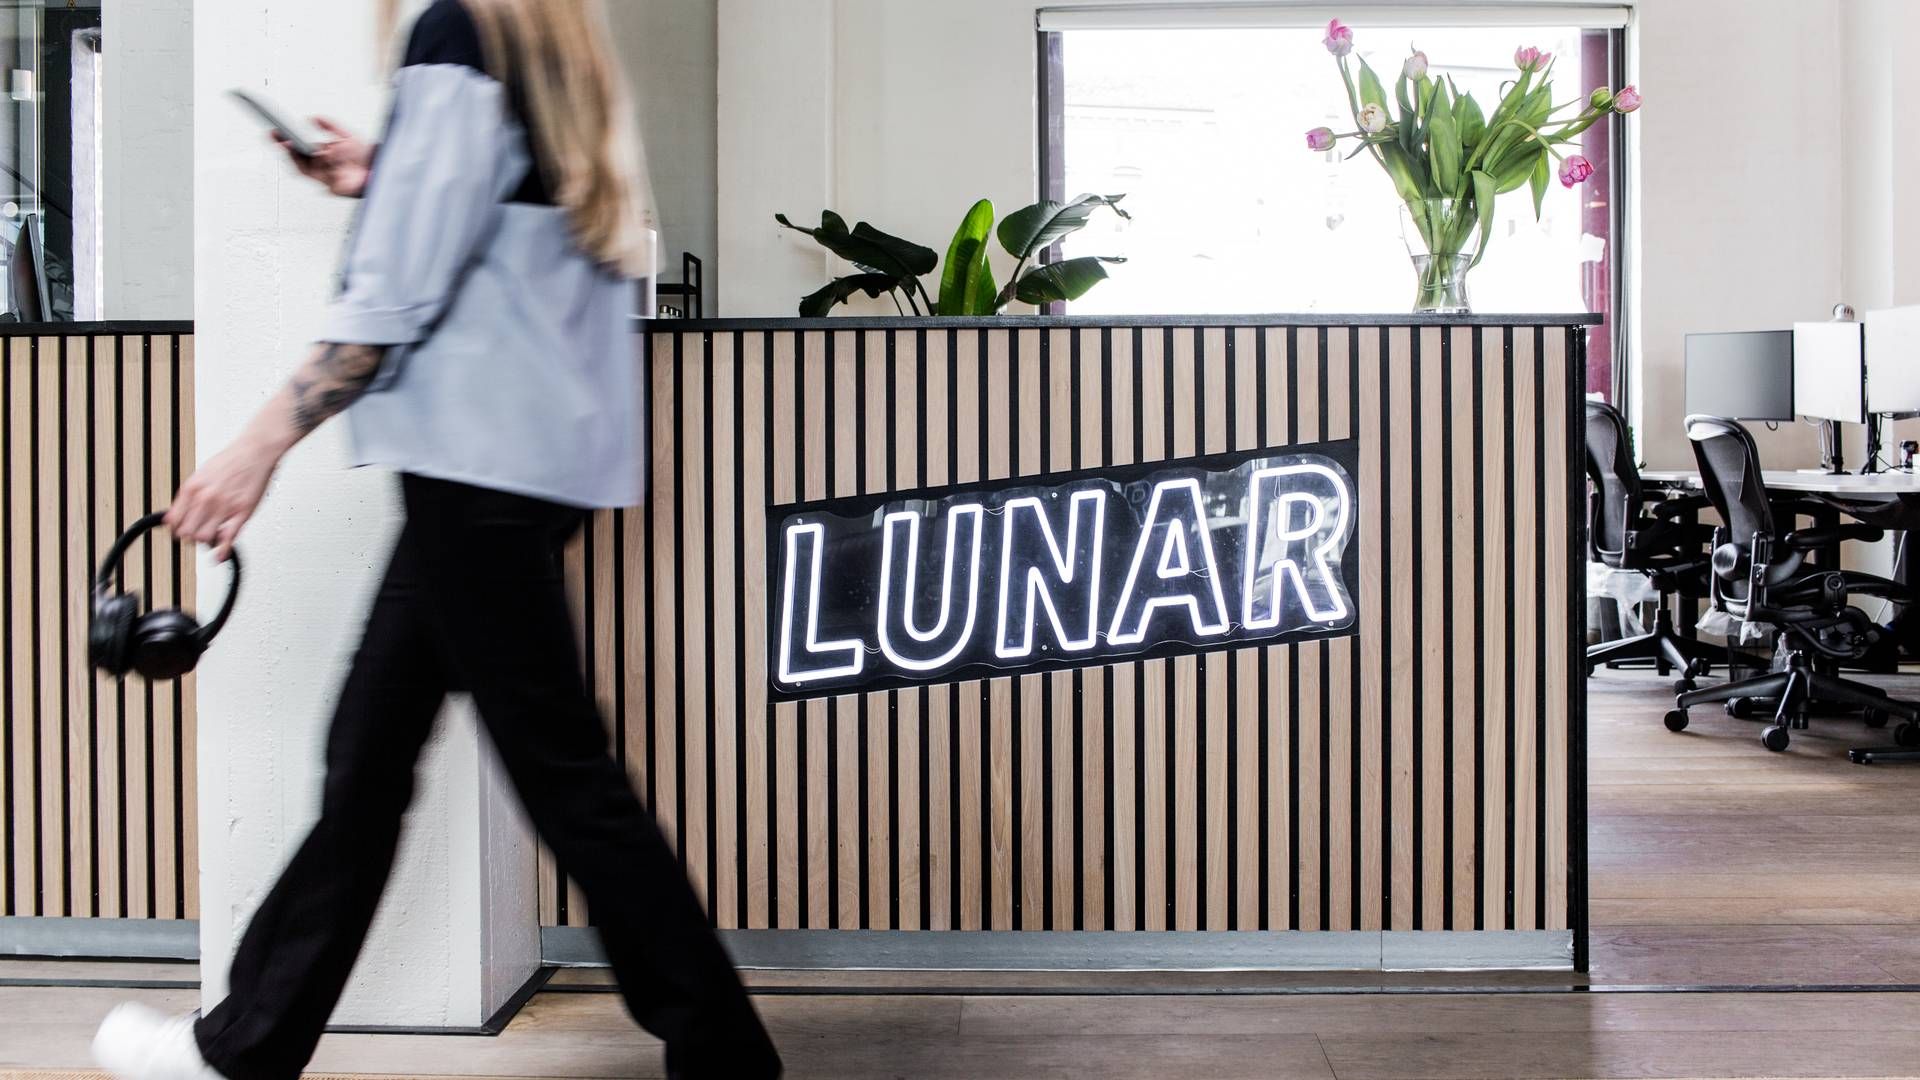 Lunar har haft et udfordrende år med kritik af Finanstilsynet samt en brast drøm om at opkøbe konkurrent. | Foto: Pr/lunar Bank